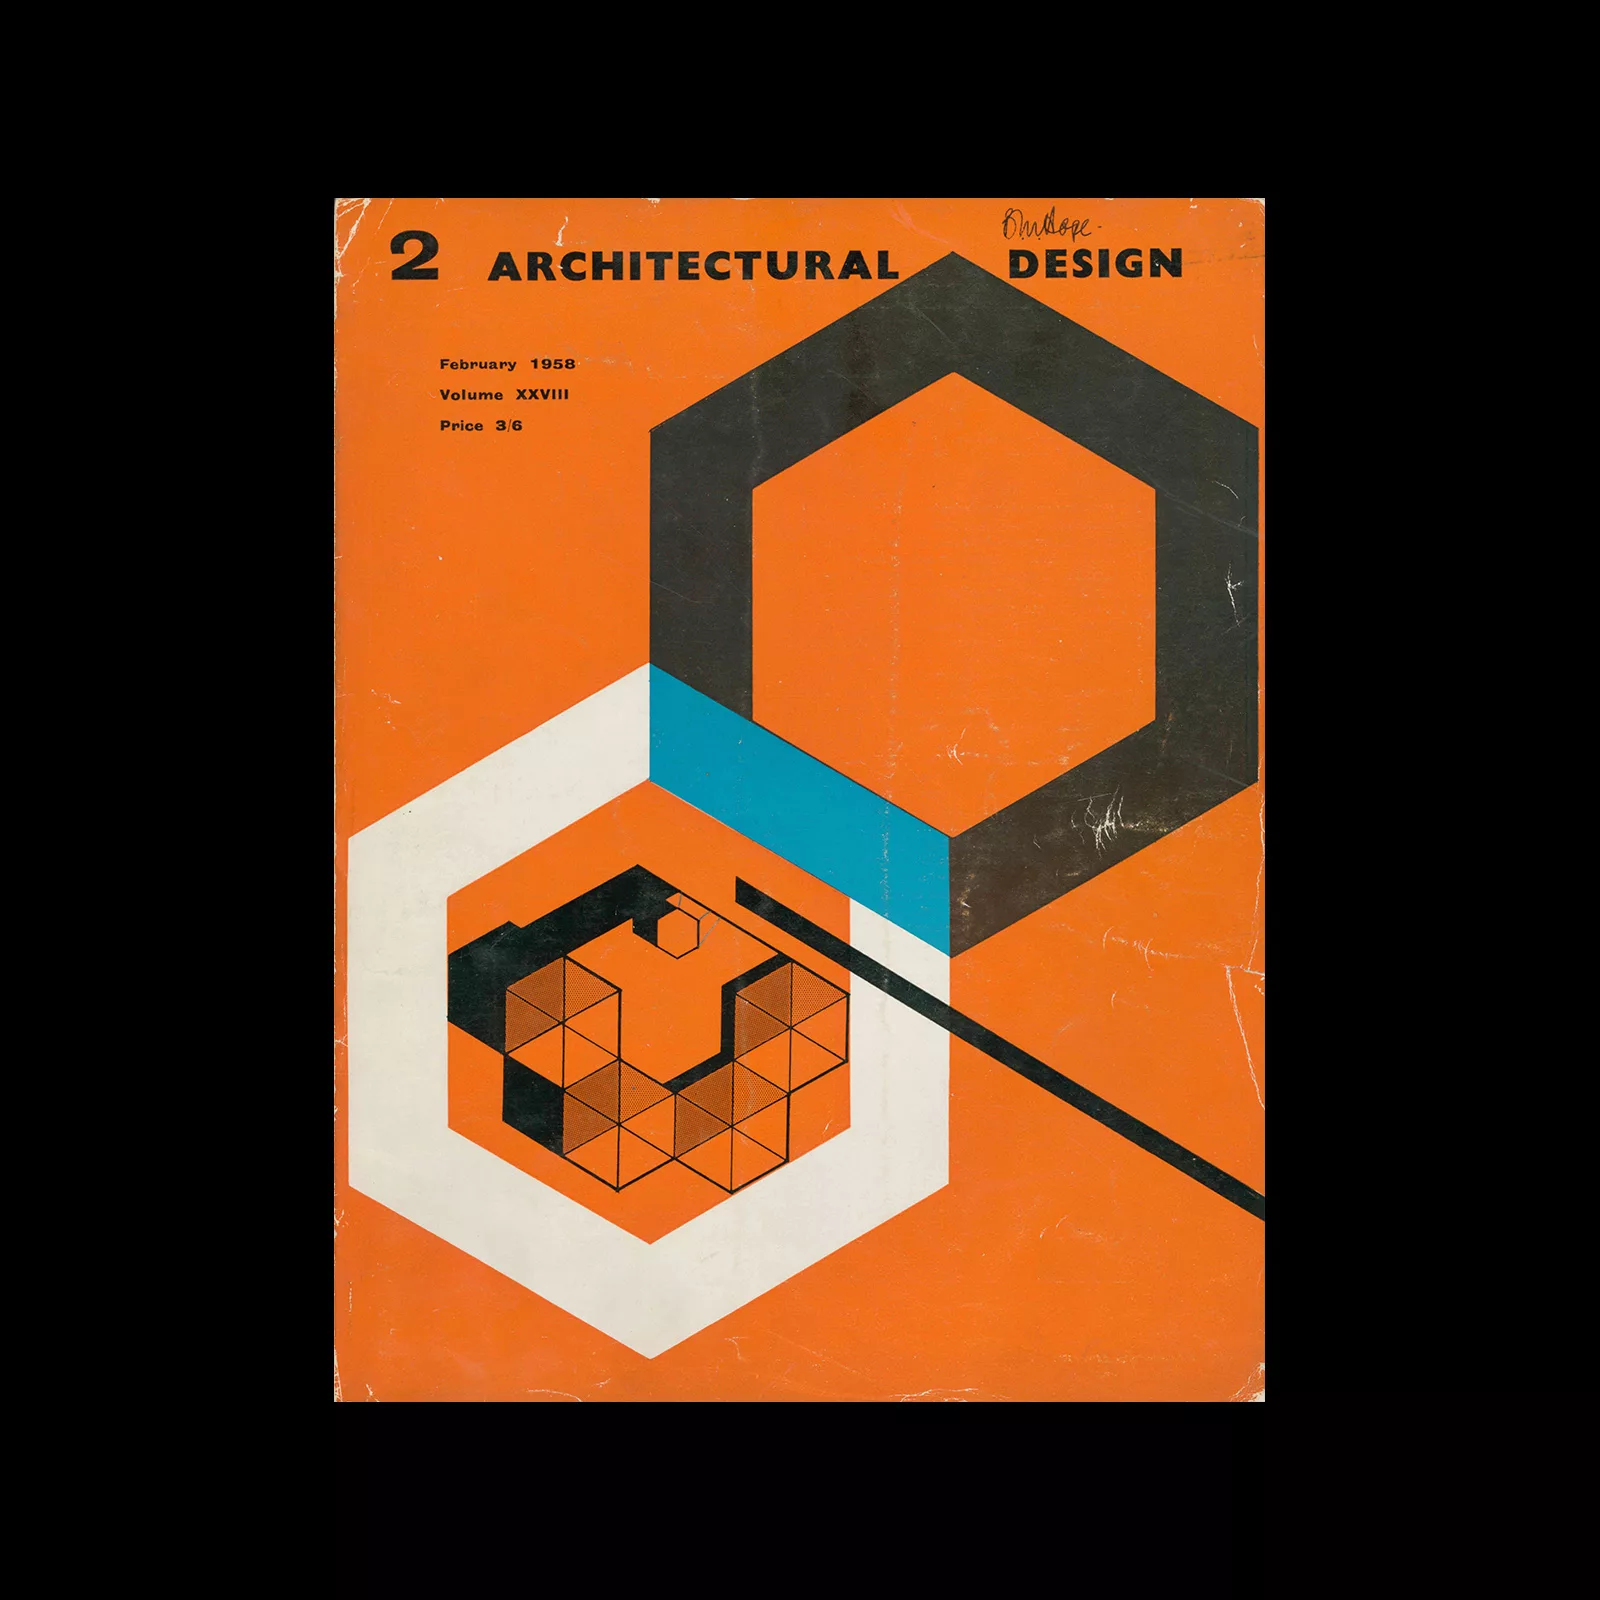 Architectural Design, February 1958